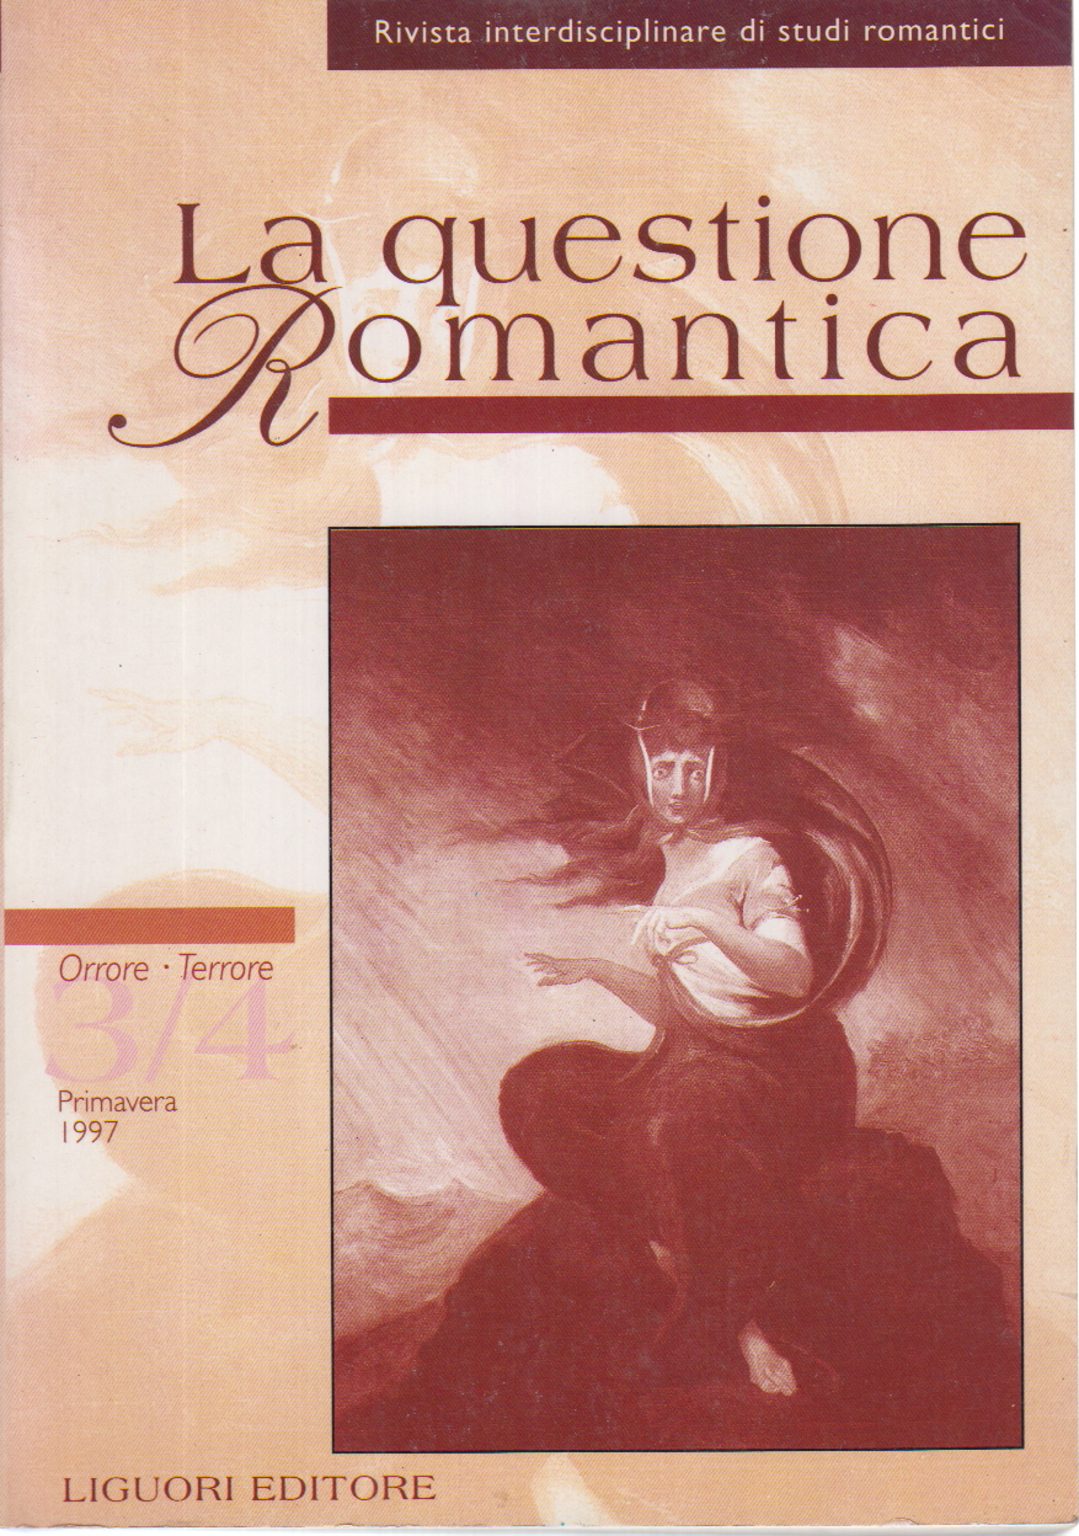 La questione Romantica 3/4 - Primavera 1997, AA.VV